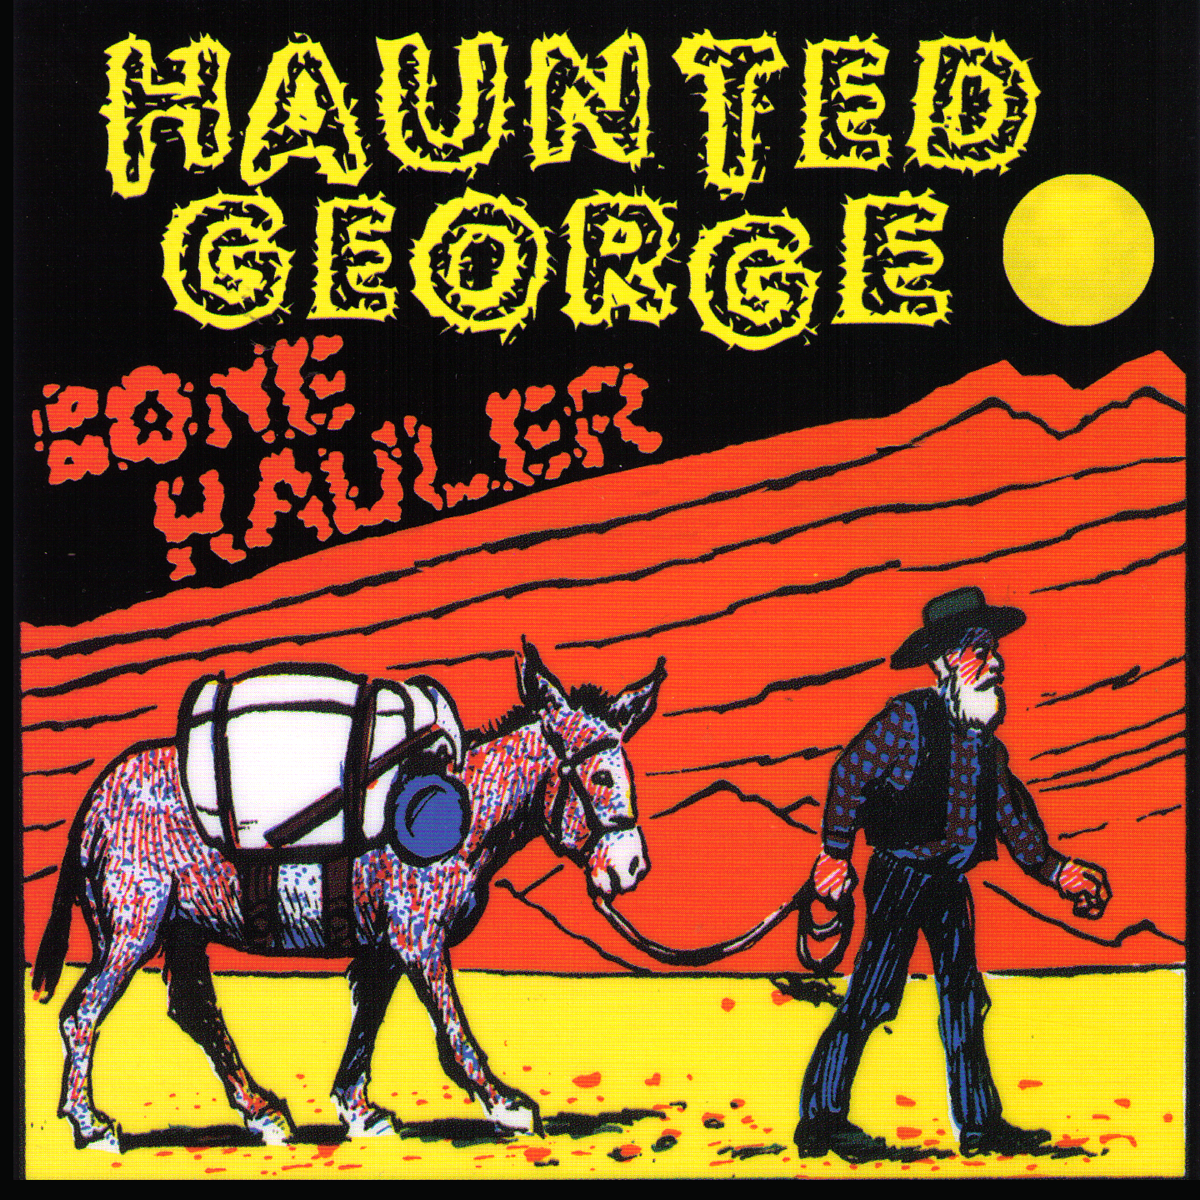 Haunted George - Bone Hauler CD ~EX NECESSARY EVILS!